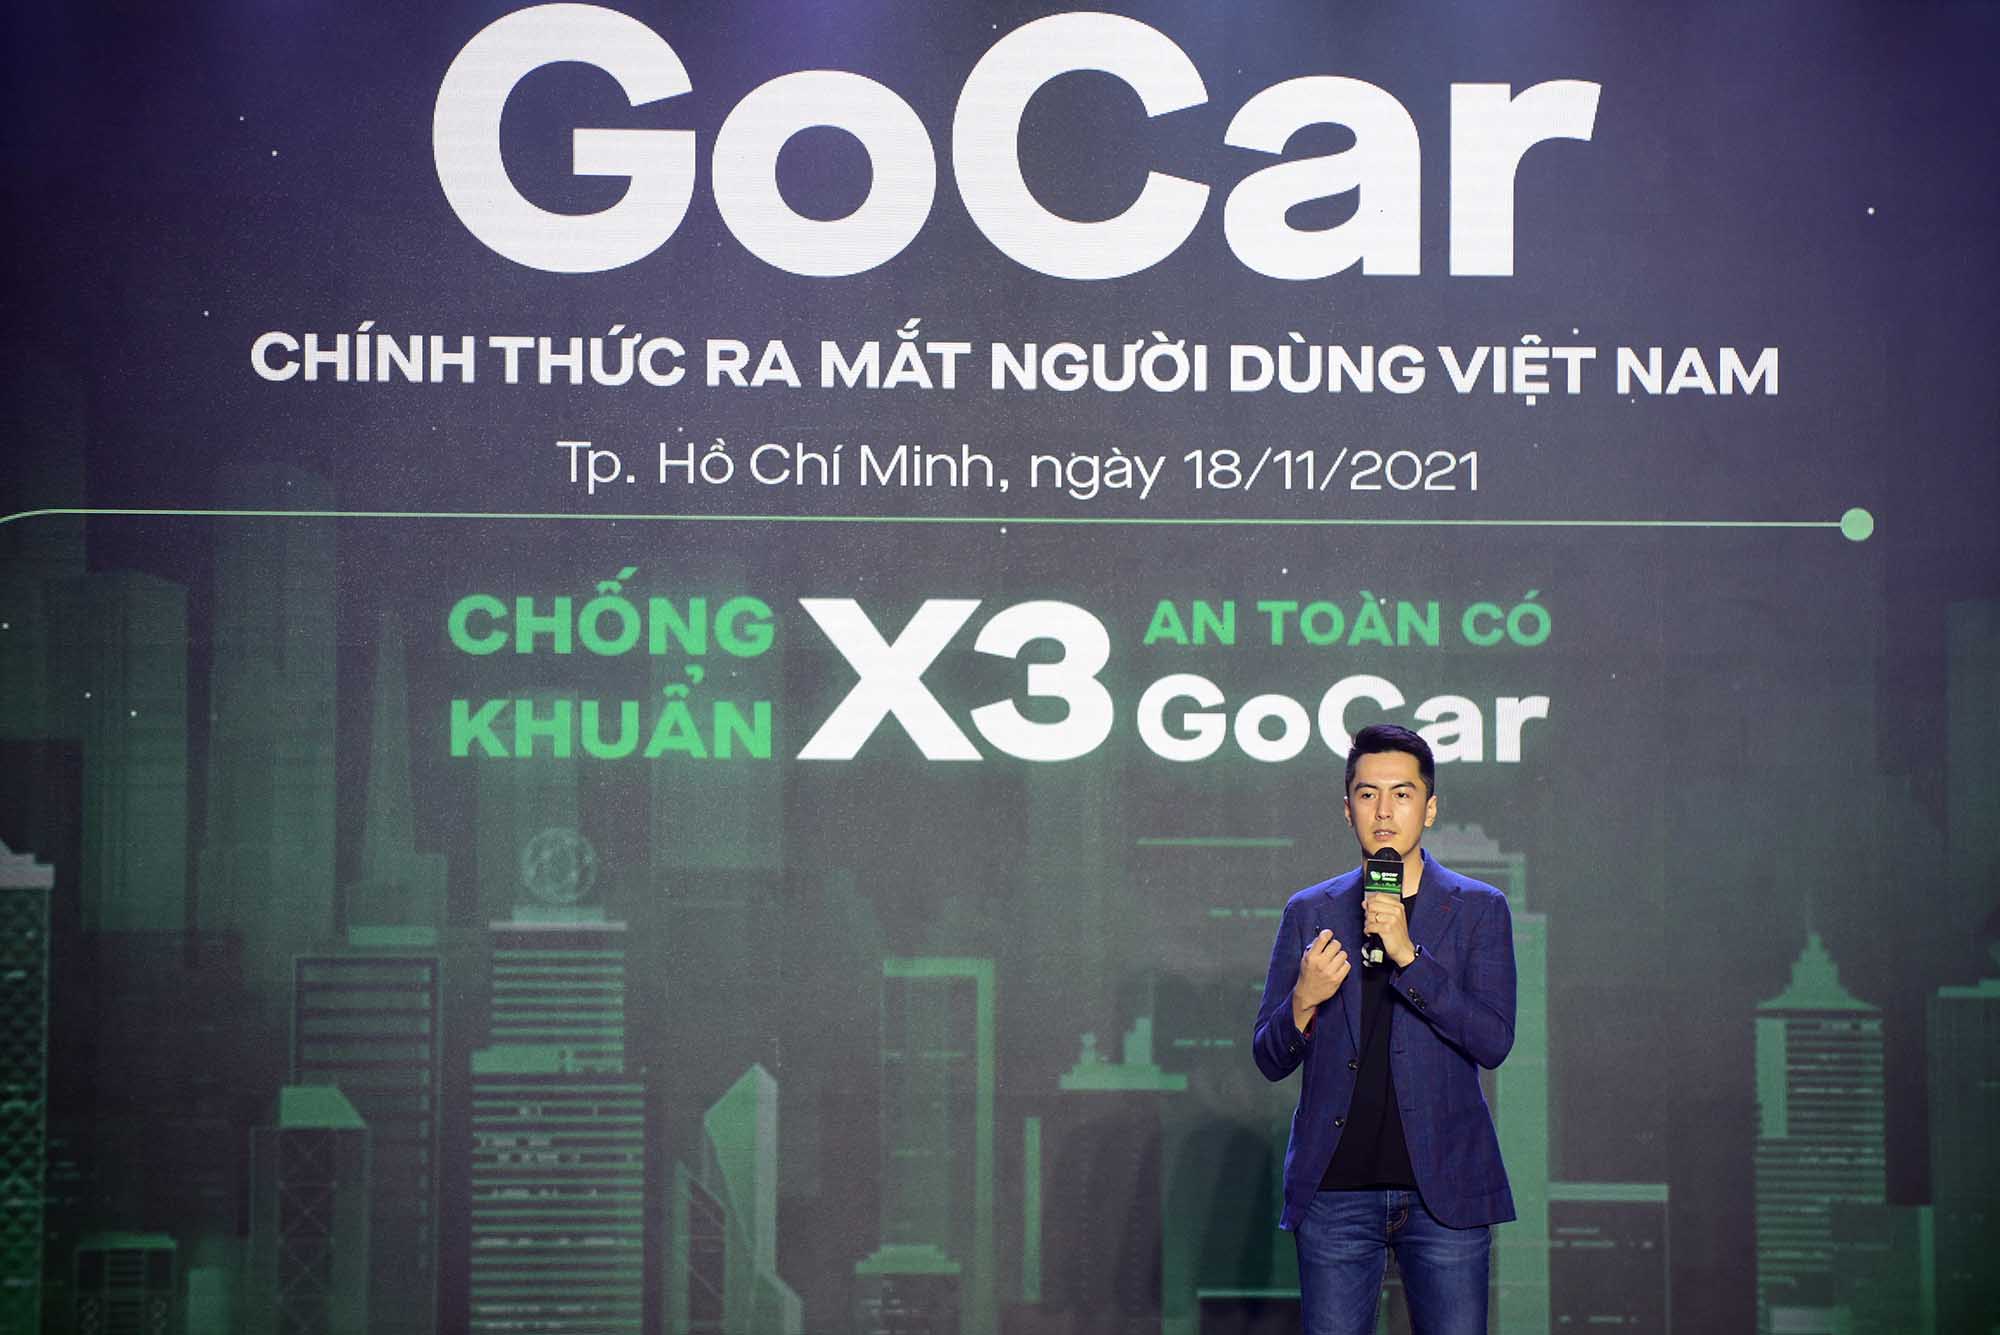 Gojek chính thức mở rộng GoCar để phục vụ người dân tại Thành phố Hồ Chí Minh, bắt đầu với dòng sản phẩm GoCar Protect